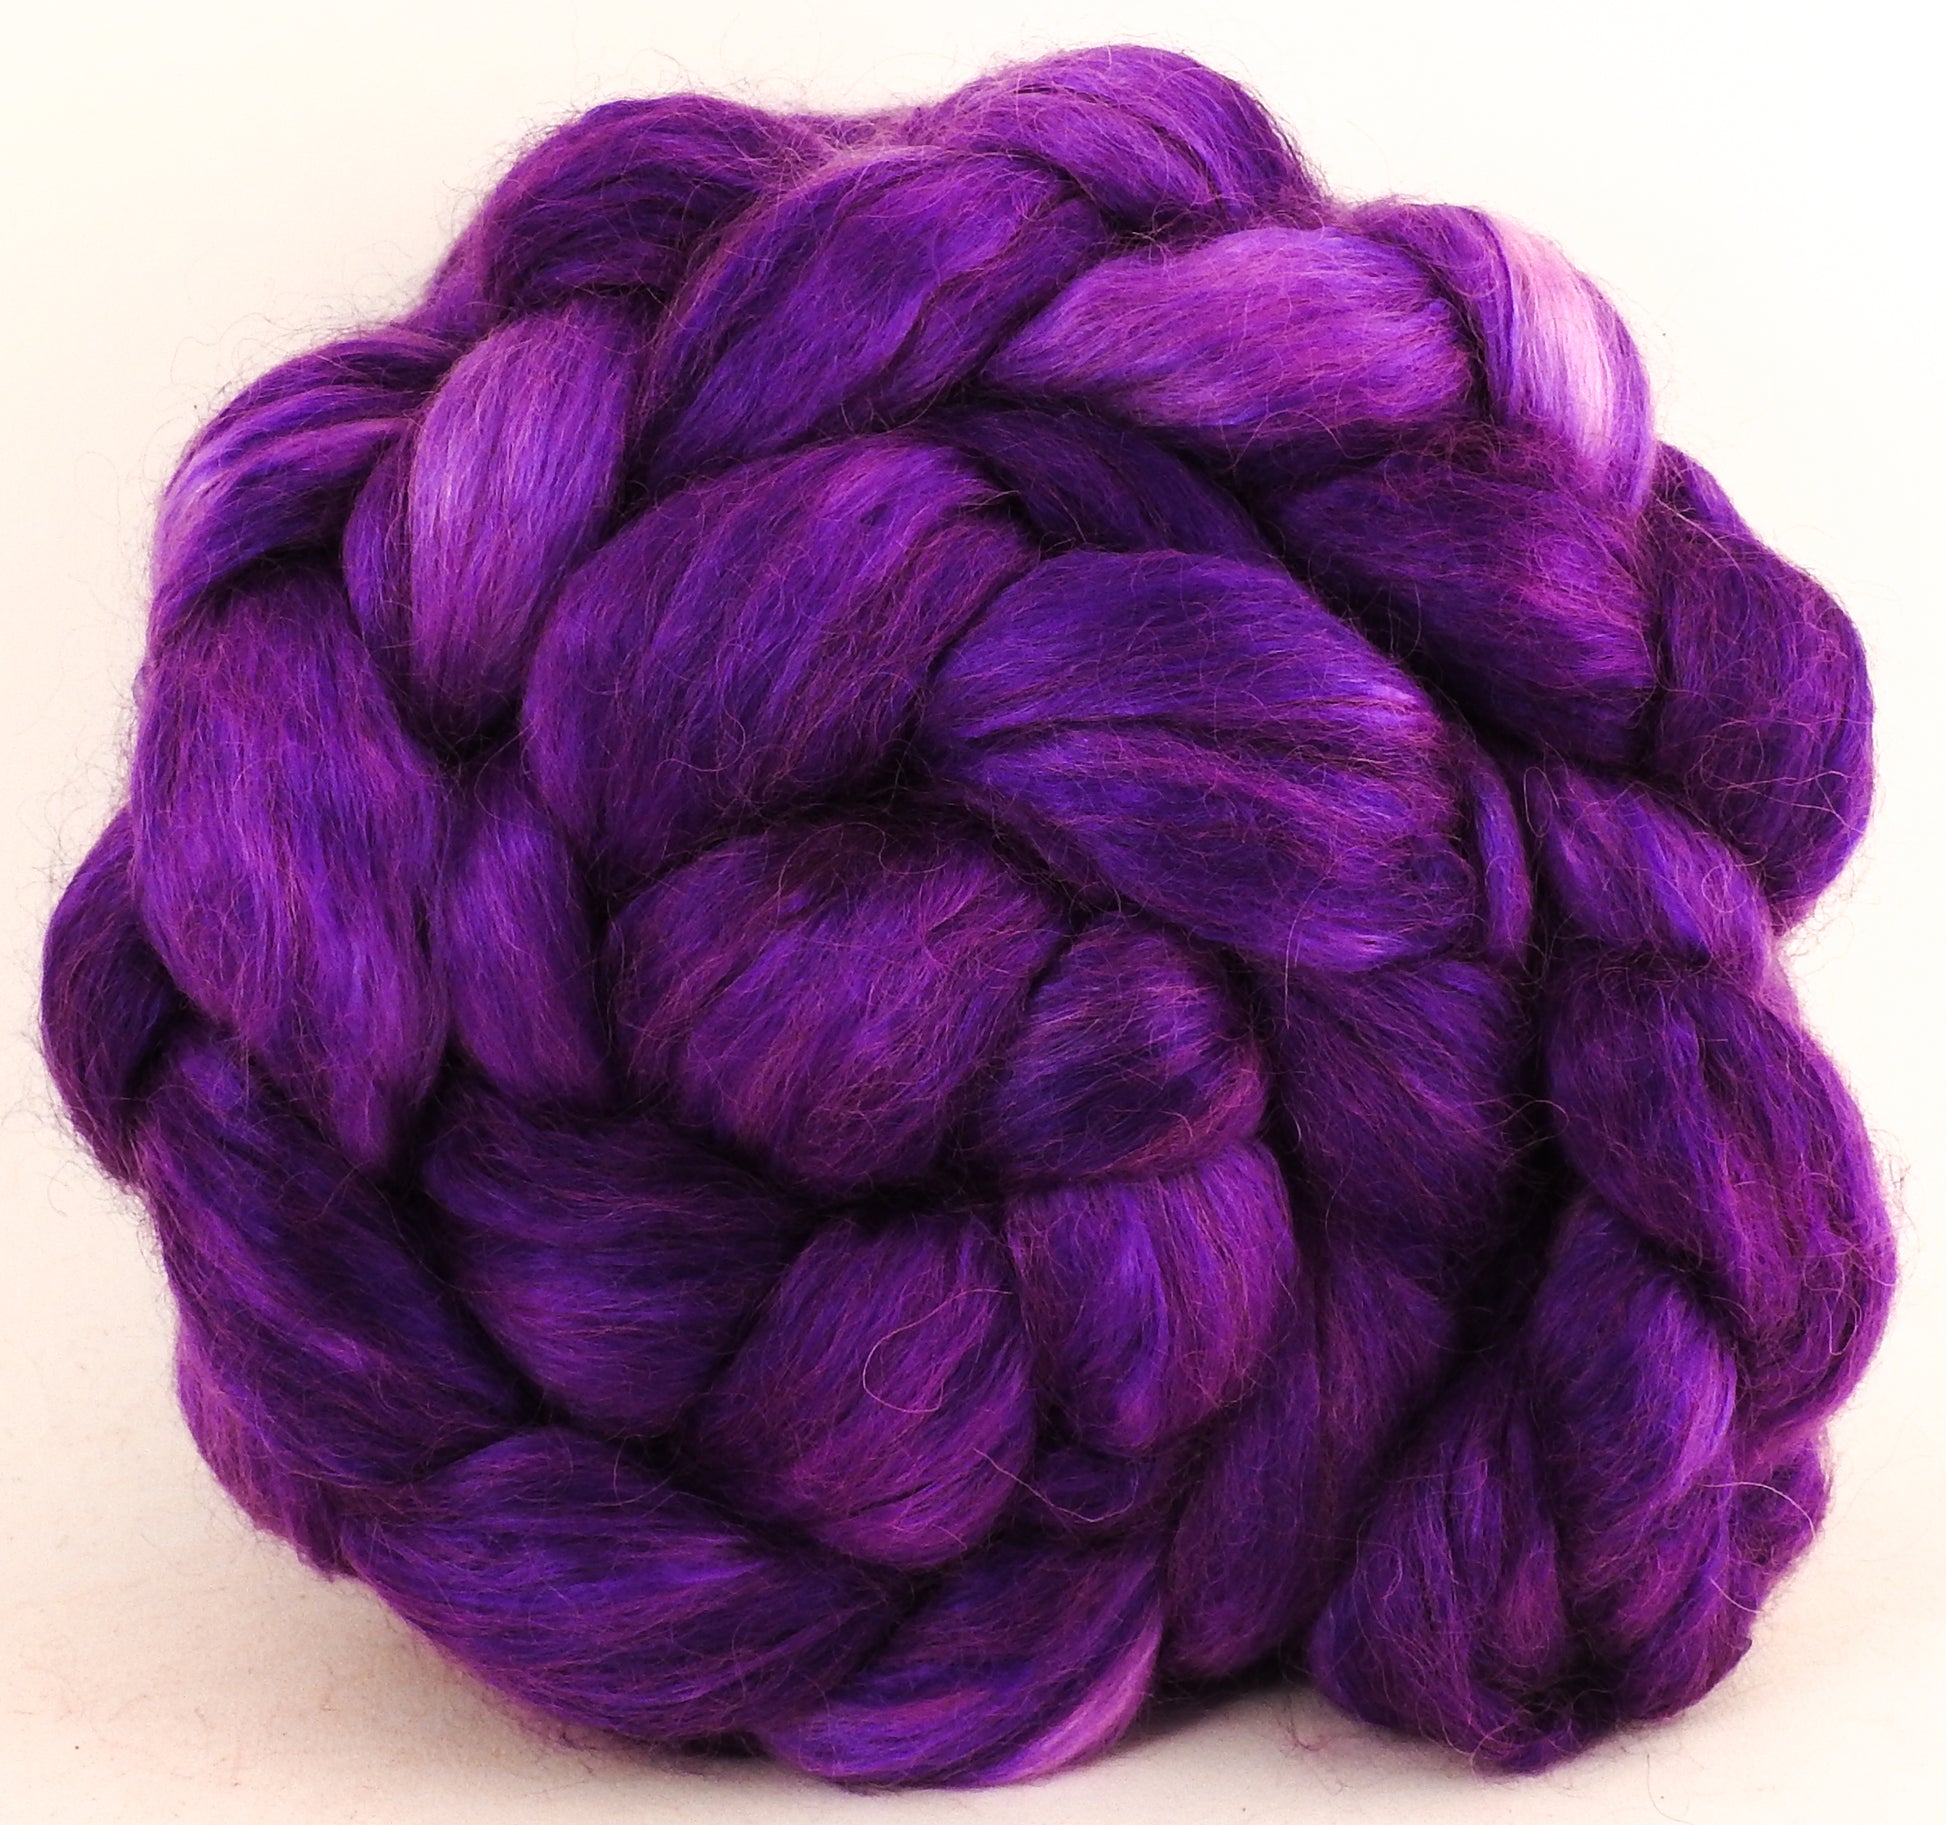 Hand-dyed wensleydale/ mulberry silk roving (65/35) - Vinca - Inglenook Fibers